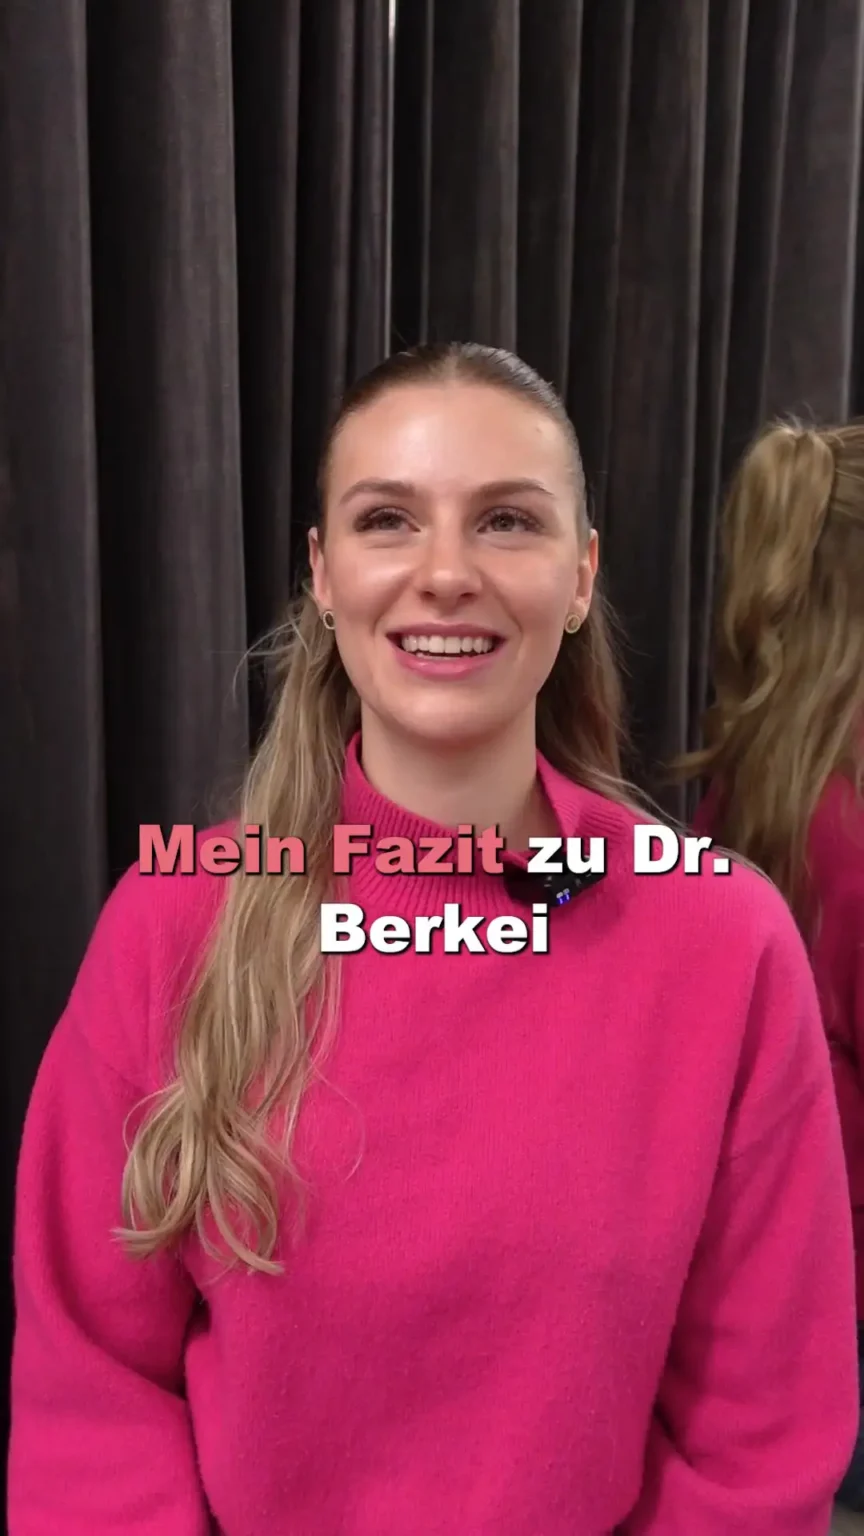 Aufnahme einer glücklichen Patientin mit dem Text "Mein Fazit zu Dr. Berkei".